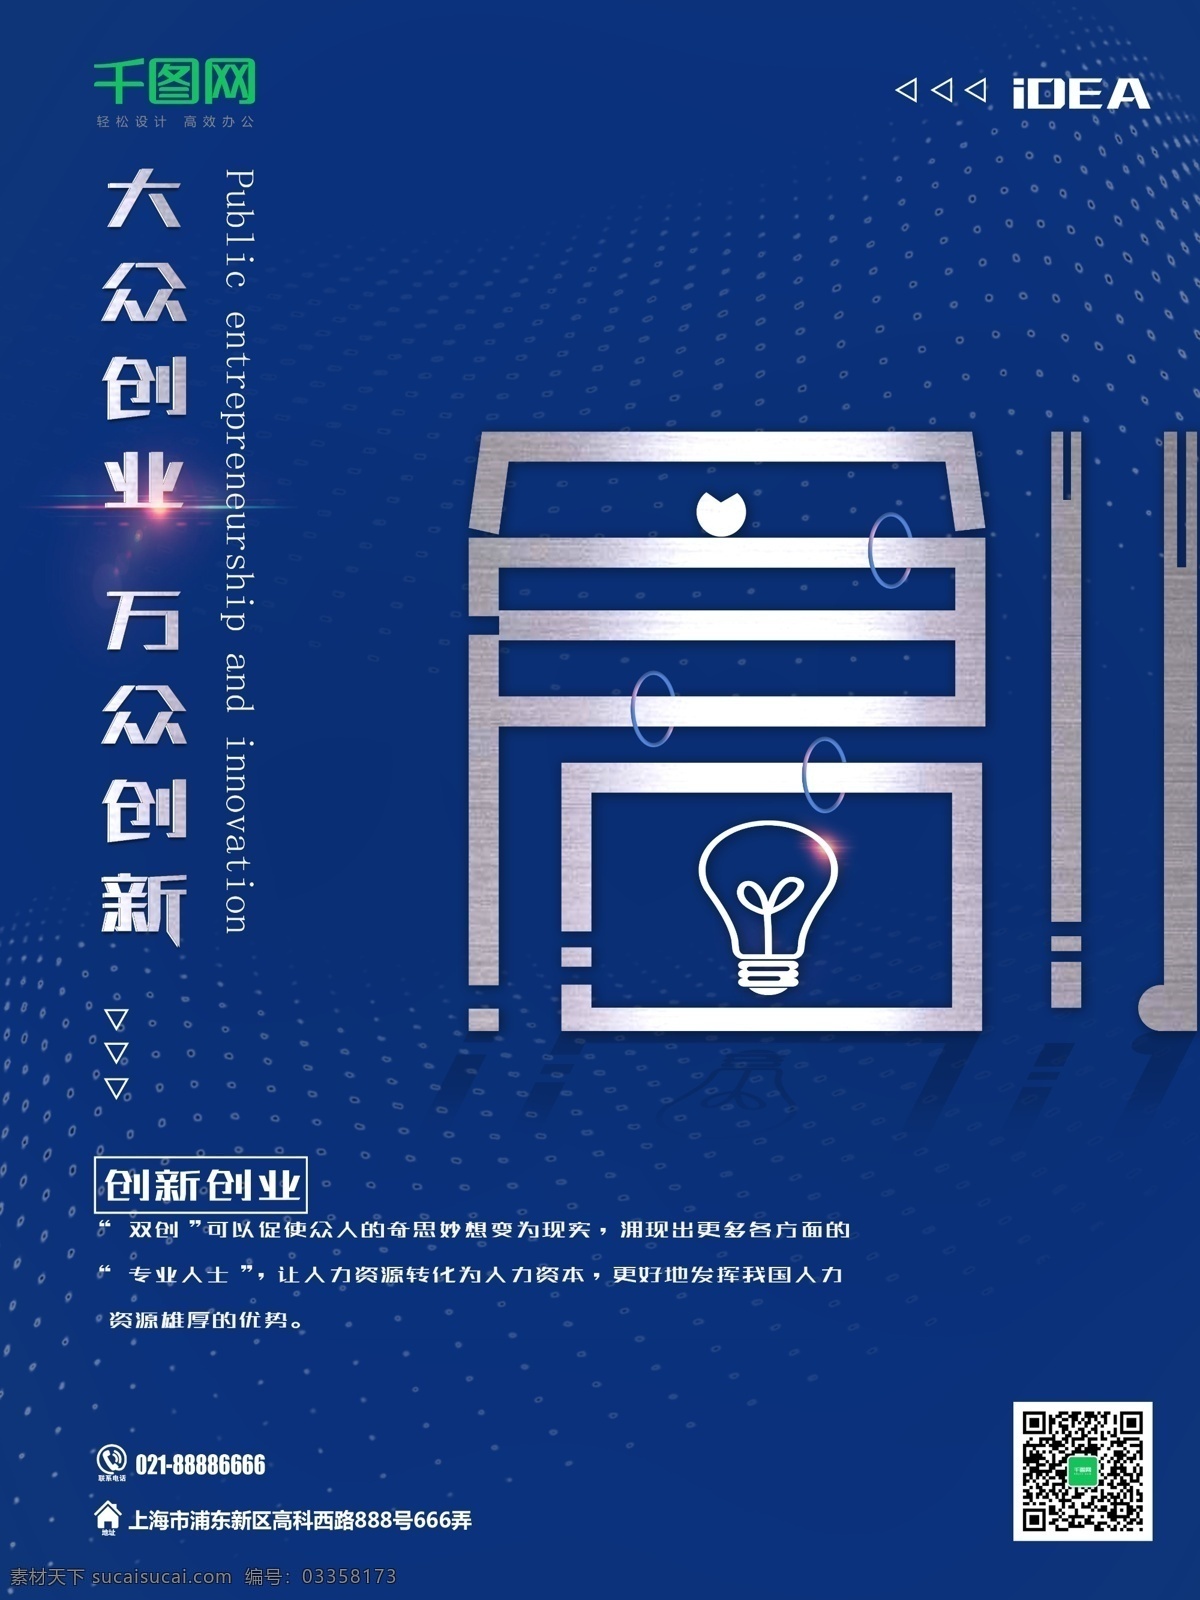 蓝色 简约 大众 创业 万众 创新 海报 创意 灯泡 科技 互联网 商务 实验式